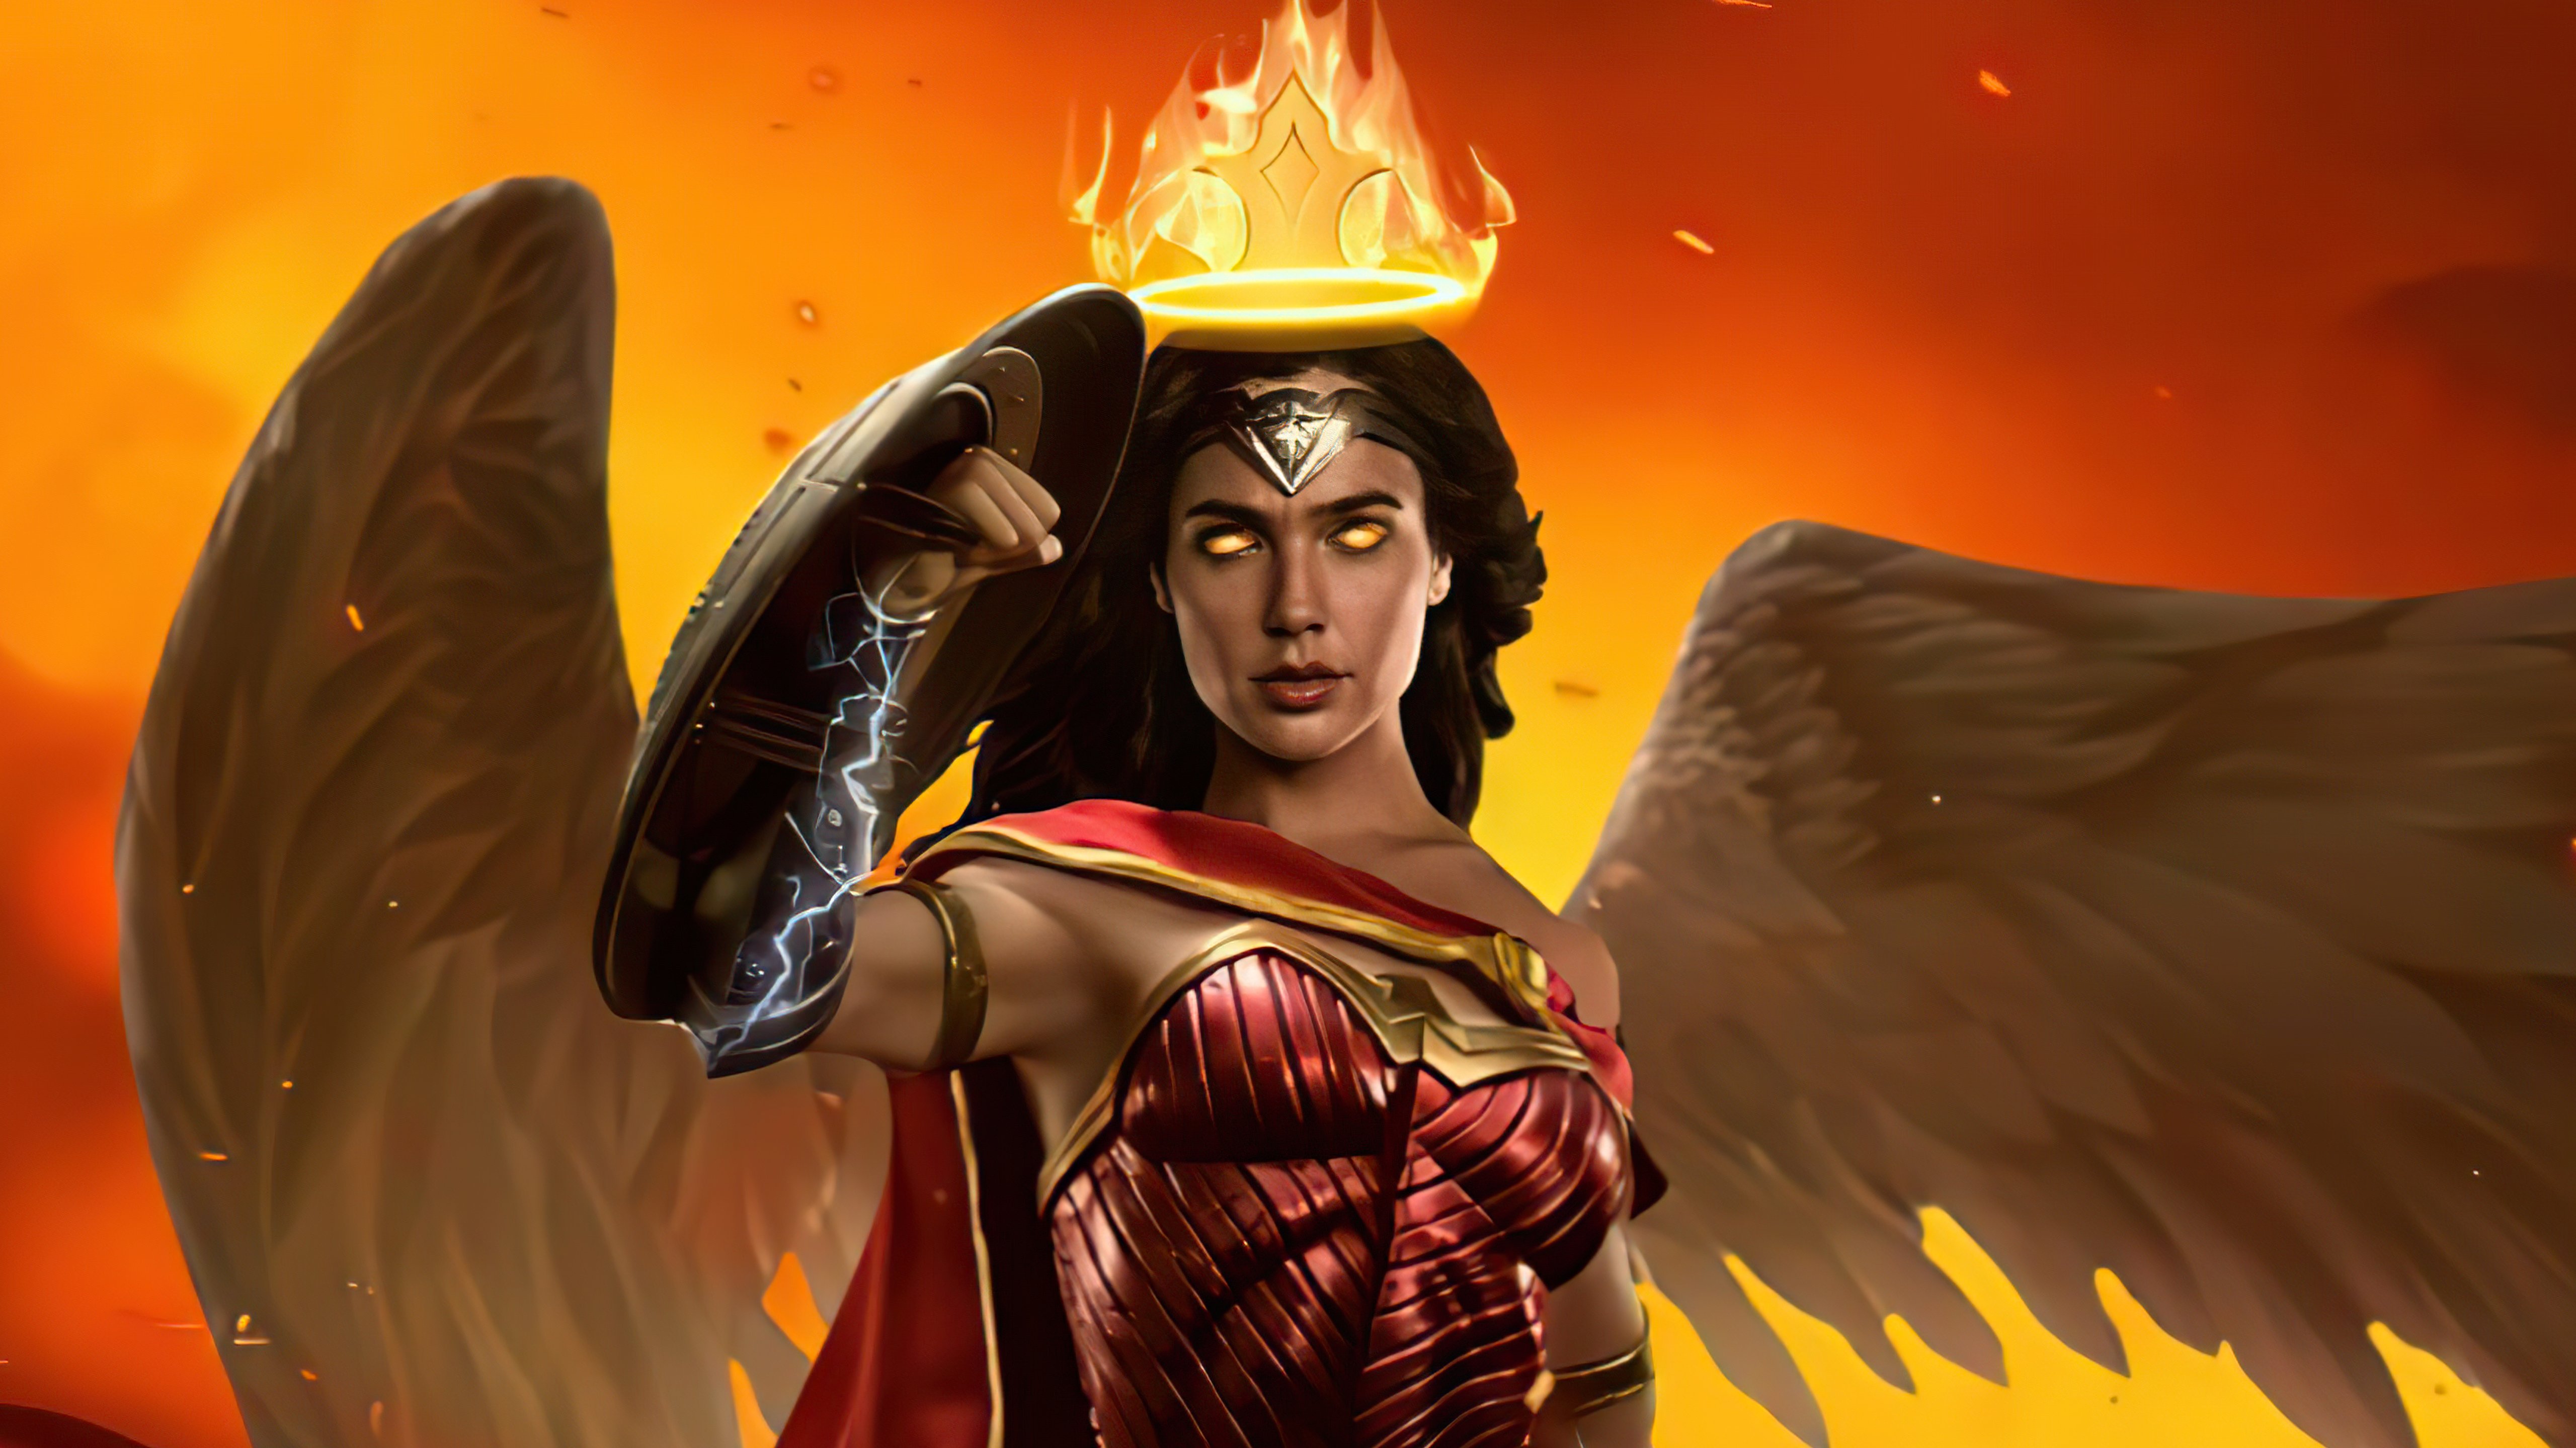 Wallpaper Wonder Woman Queen of fire